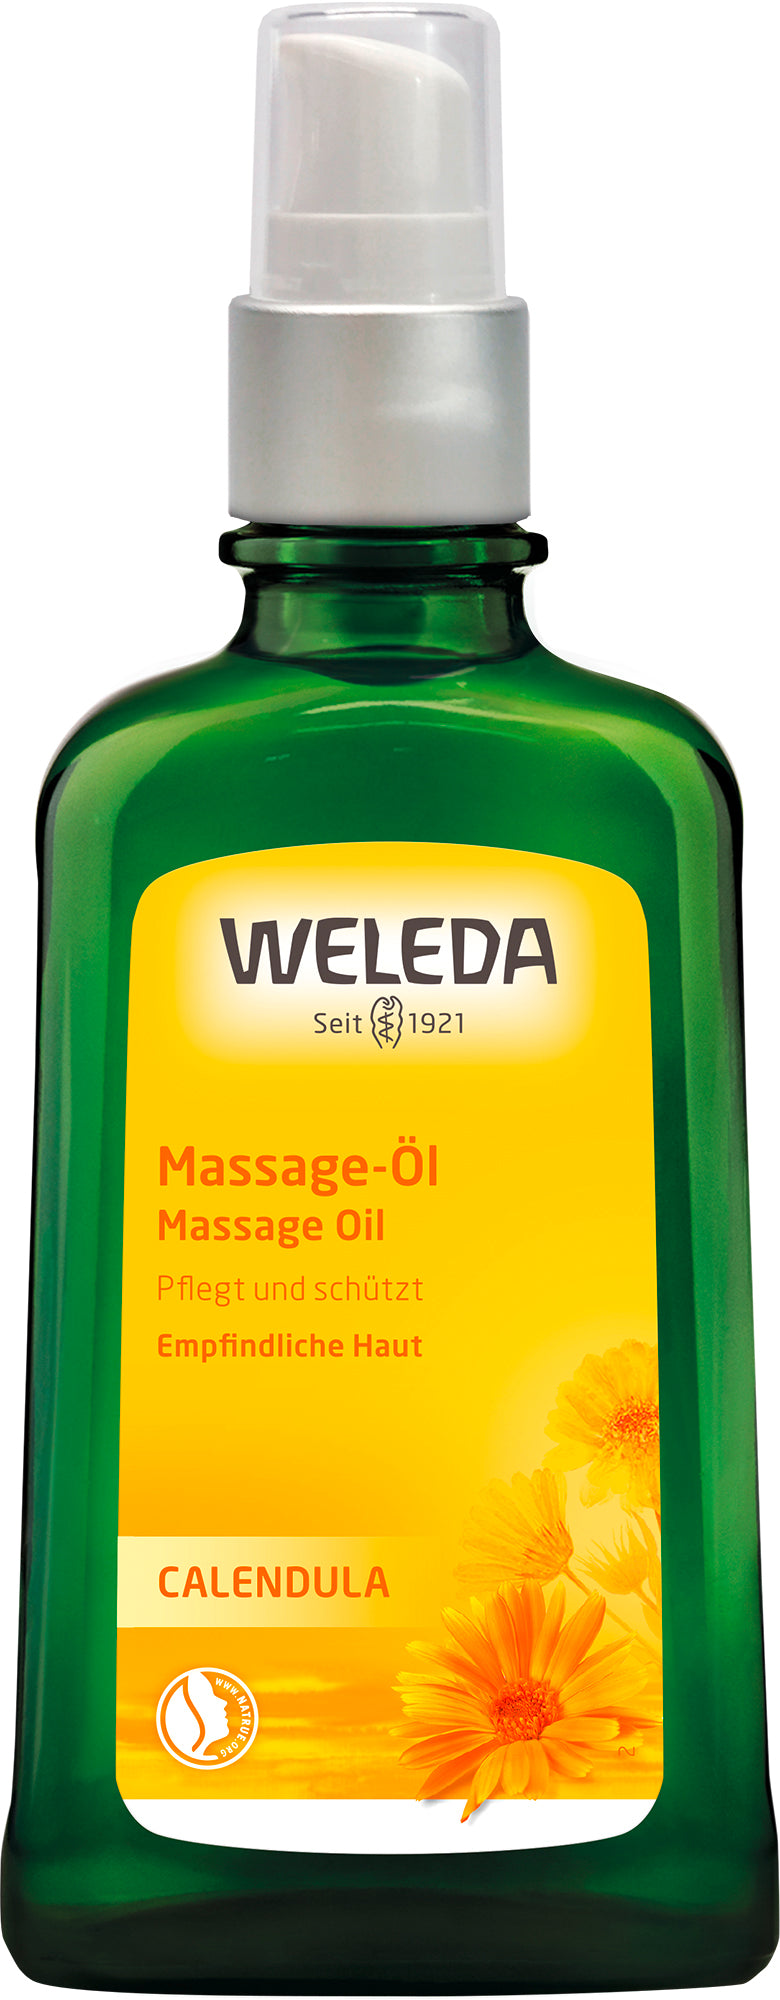 Weleda - Calendula Massage-Öl 100 ml